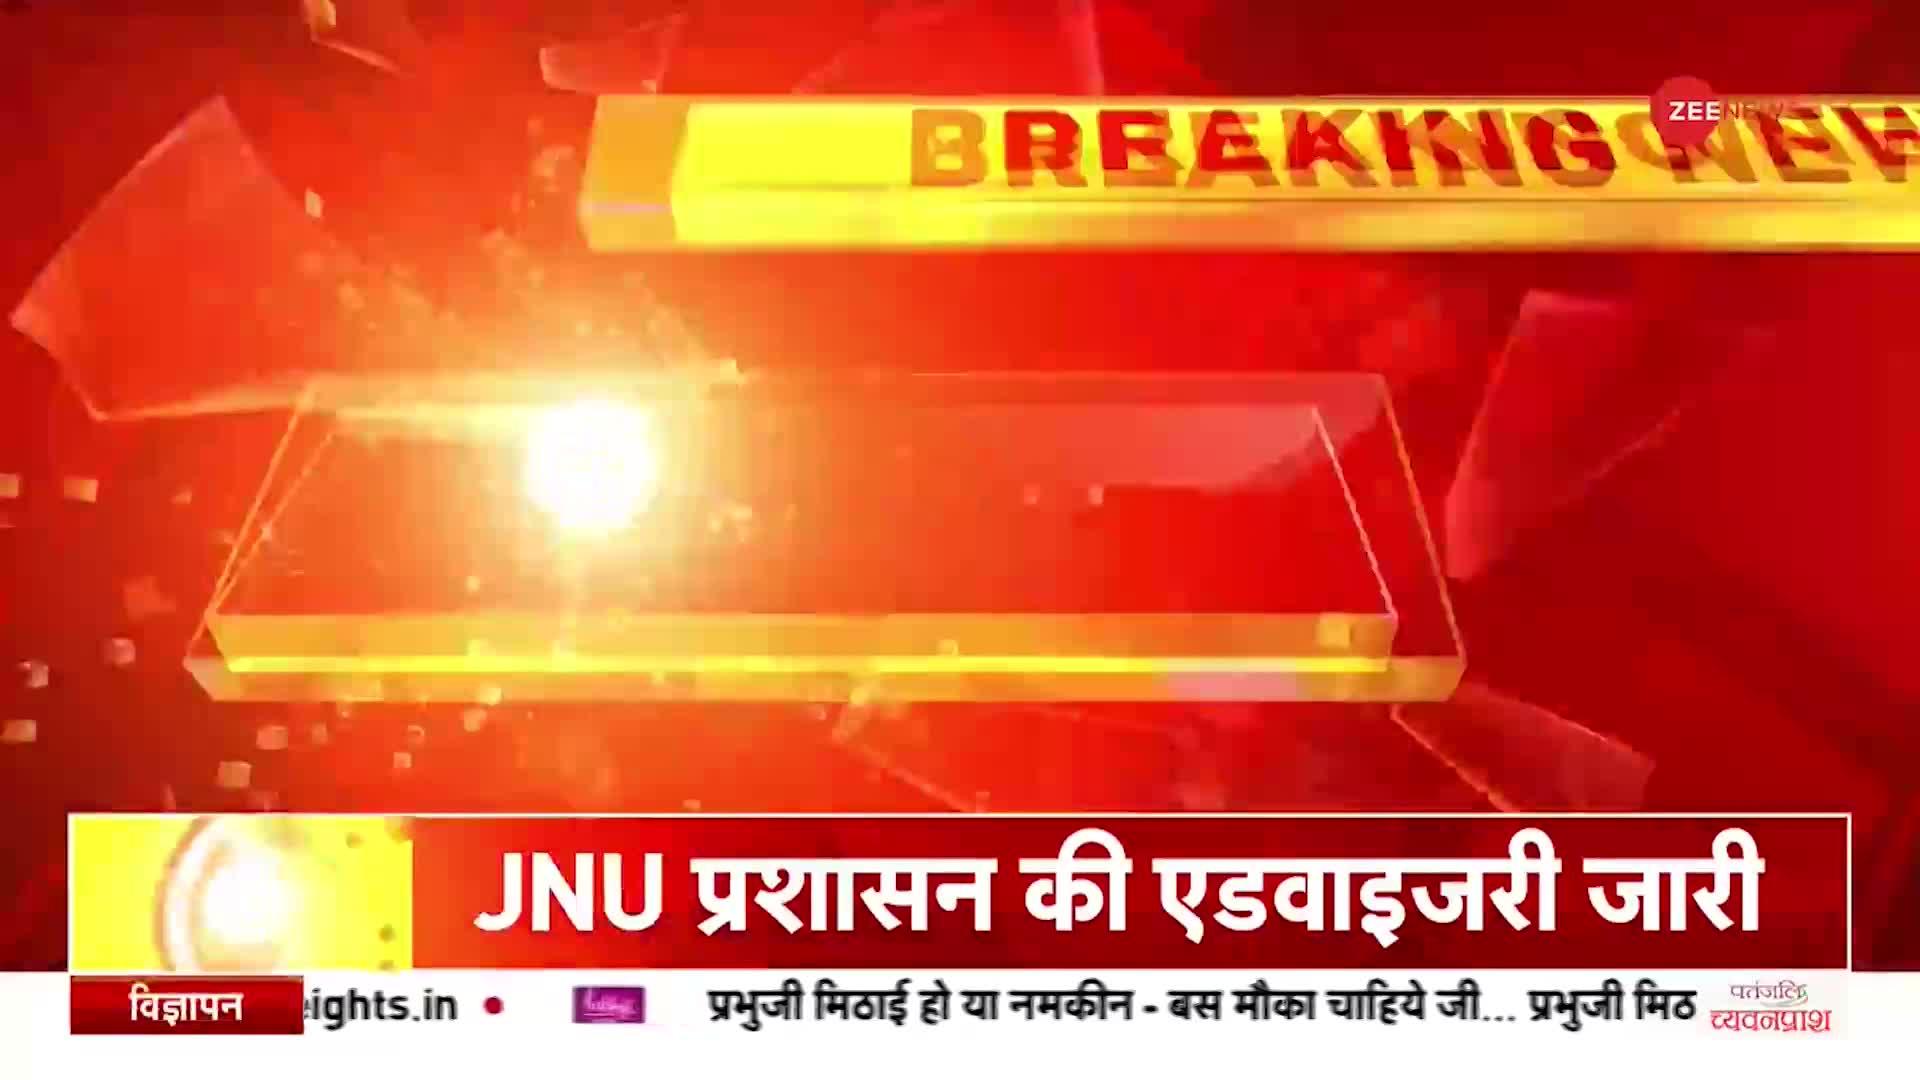 JNU ने PM Modi पर बनी बीबीसी की डॉक्यूमेंट्री की स्क्रीनिंग को रद्द करने का दिया आदेश | Hindi News